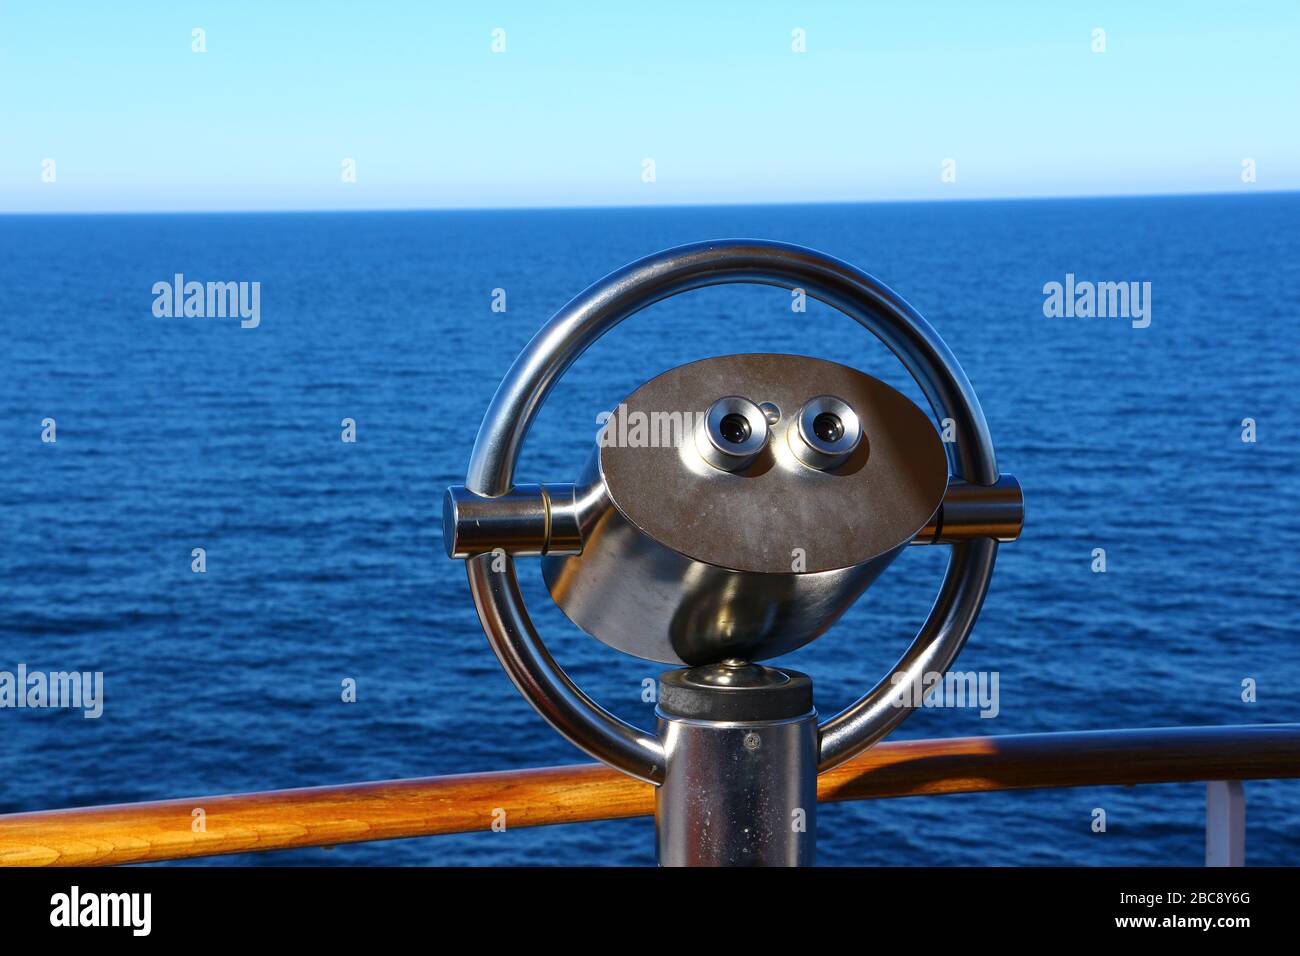 Modernes Fernglas auf einem Kreuzfahrstschiff Banque D'Images